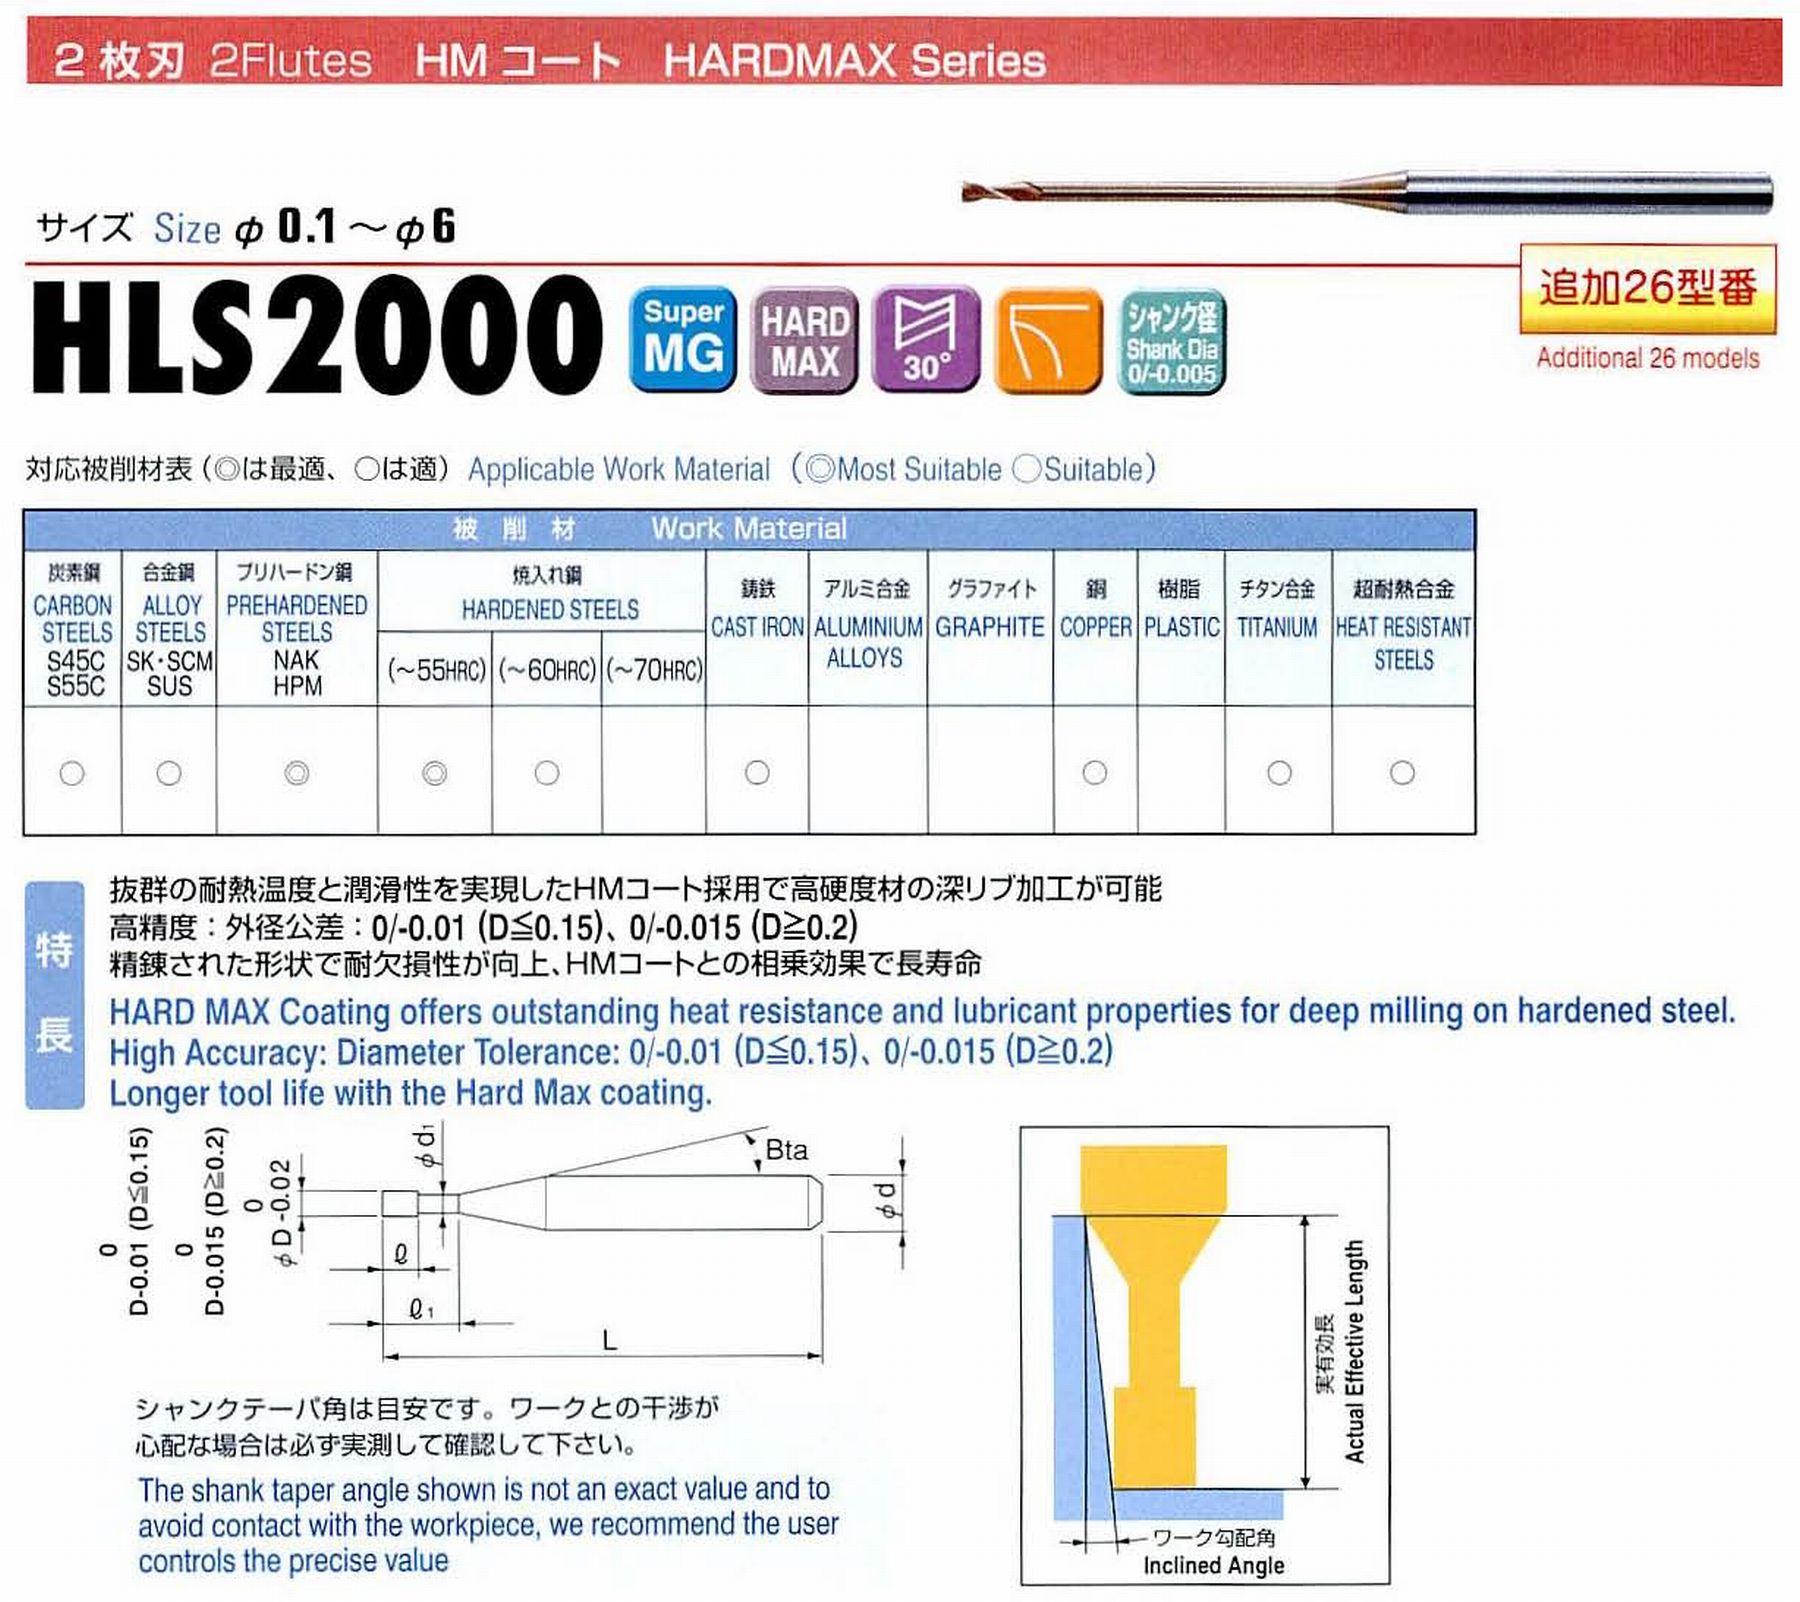 ユニオンツール 2枚刃 HLS2006-070 外径0.6 有効長7 刃長0.9 首径0.58 シャンクテーパ角16° 全長45 シャンク径4